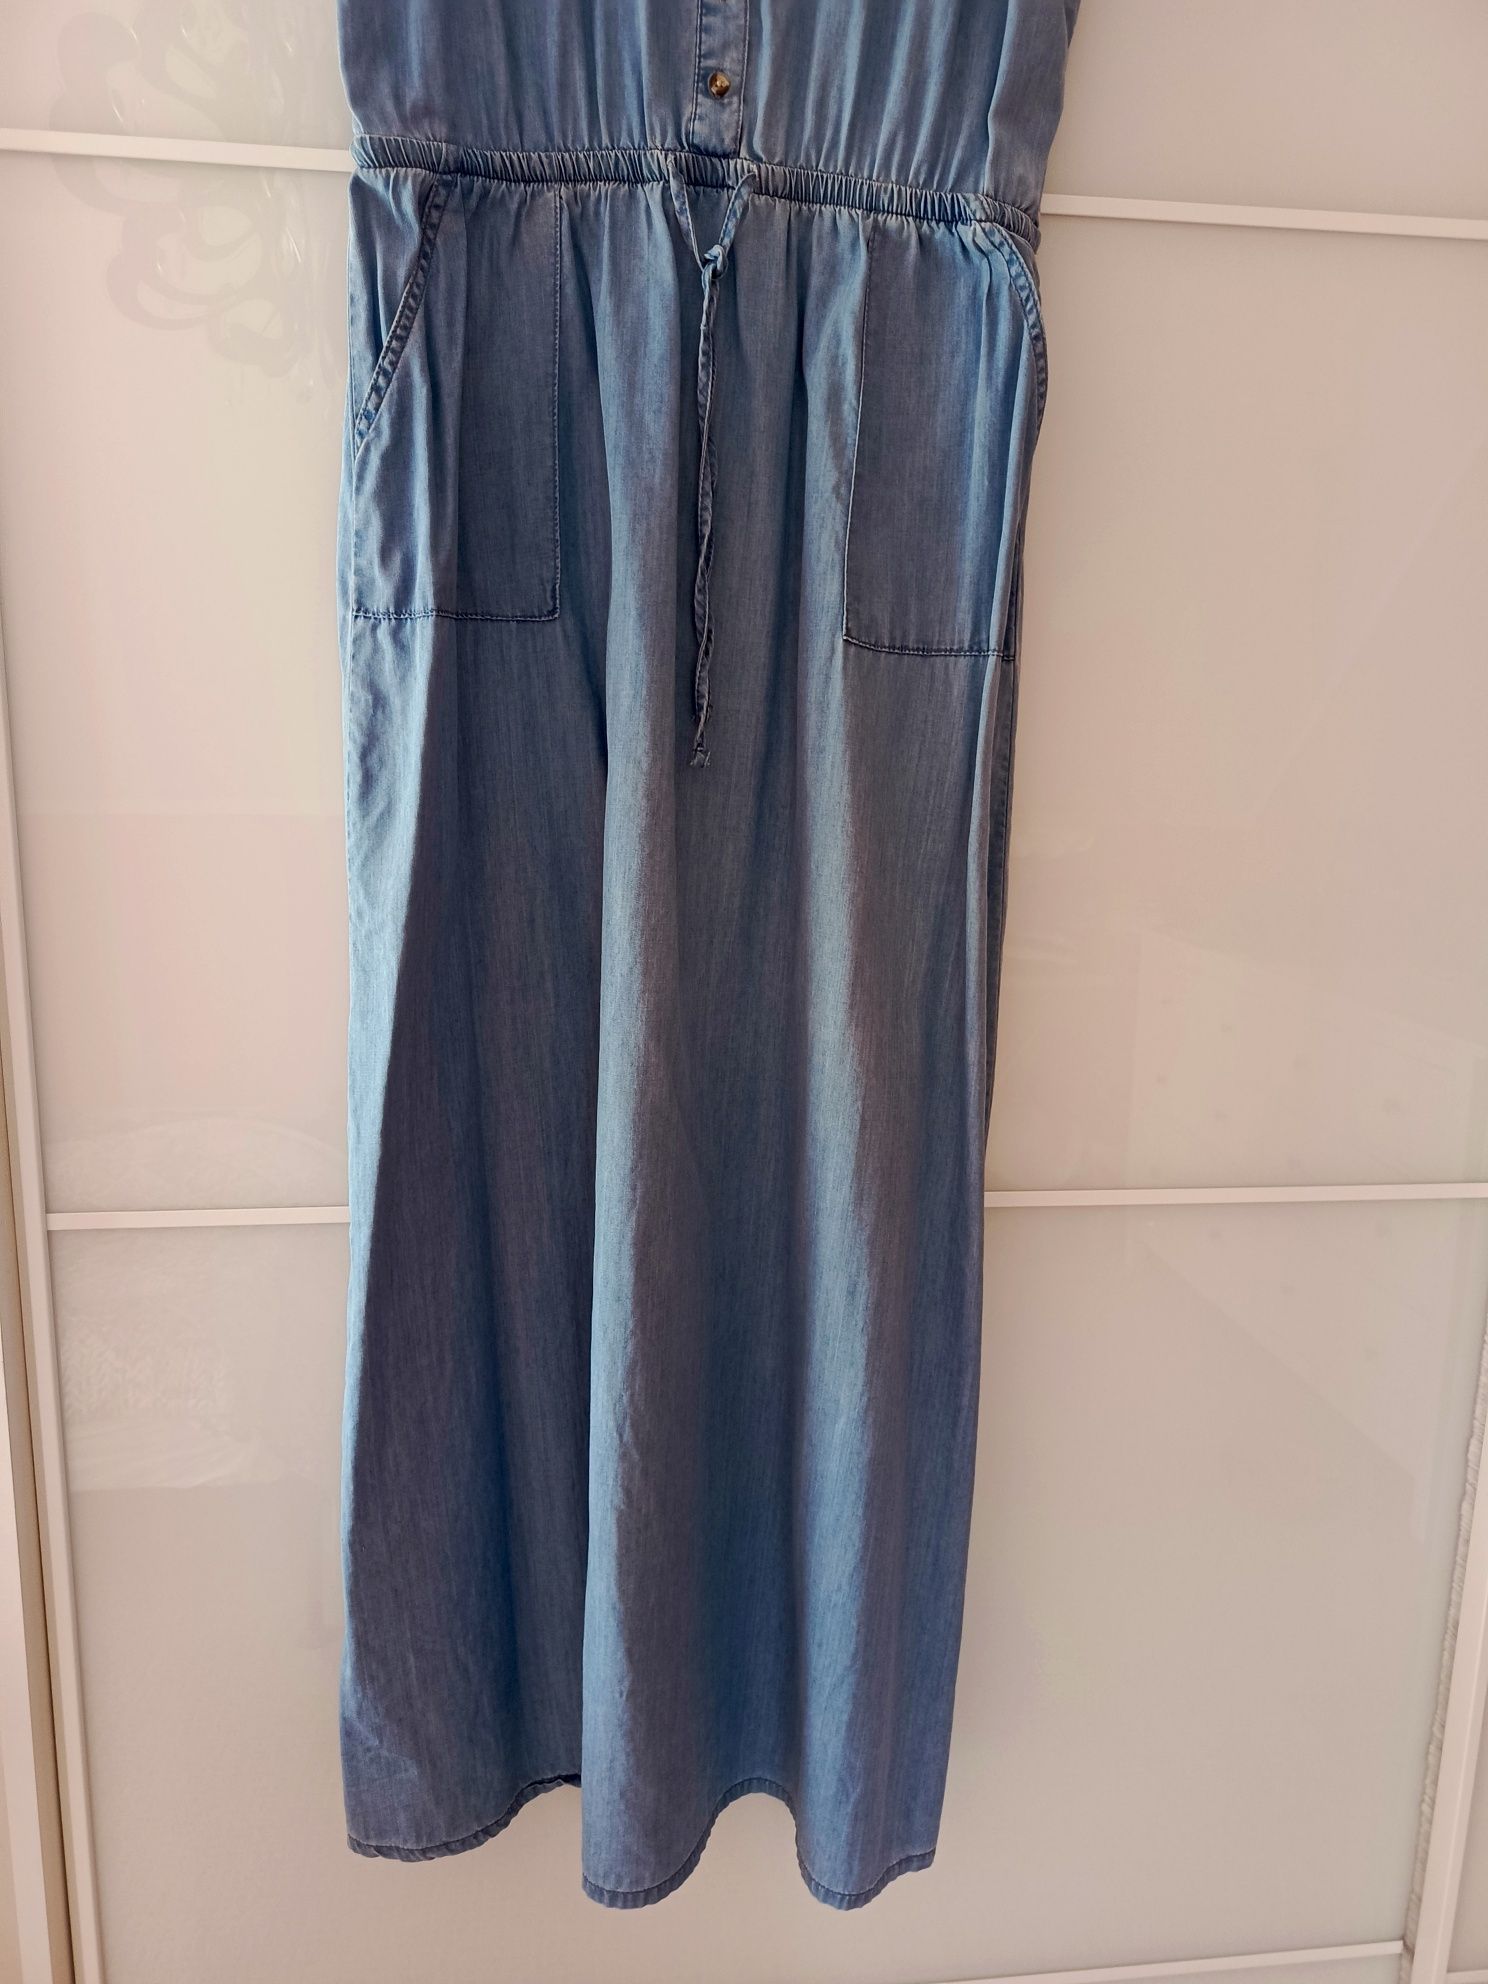 Sukienka jeansowa długa roz 42 XL delikatny jeans na lato nowa bez met